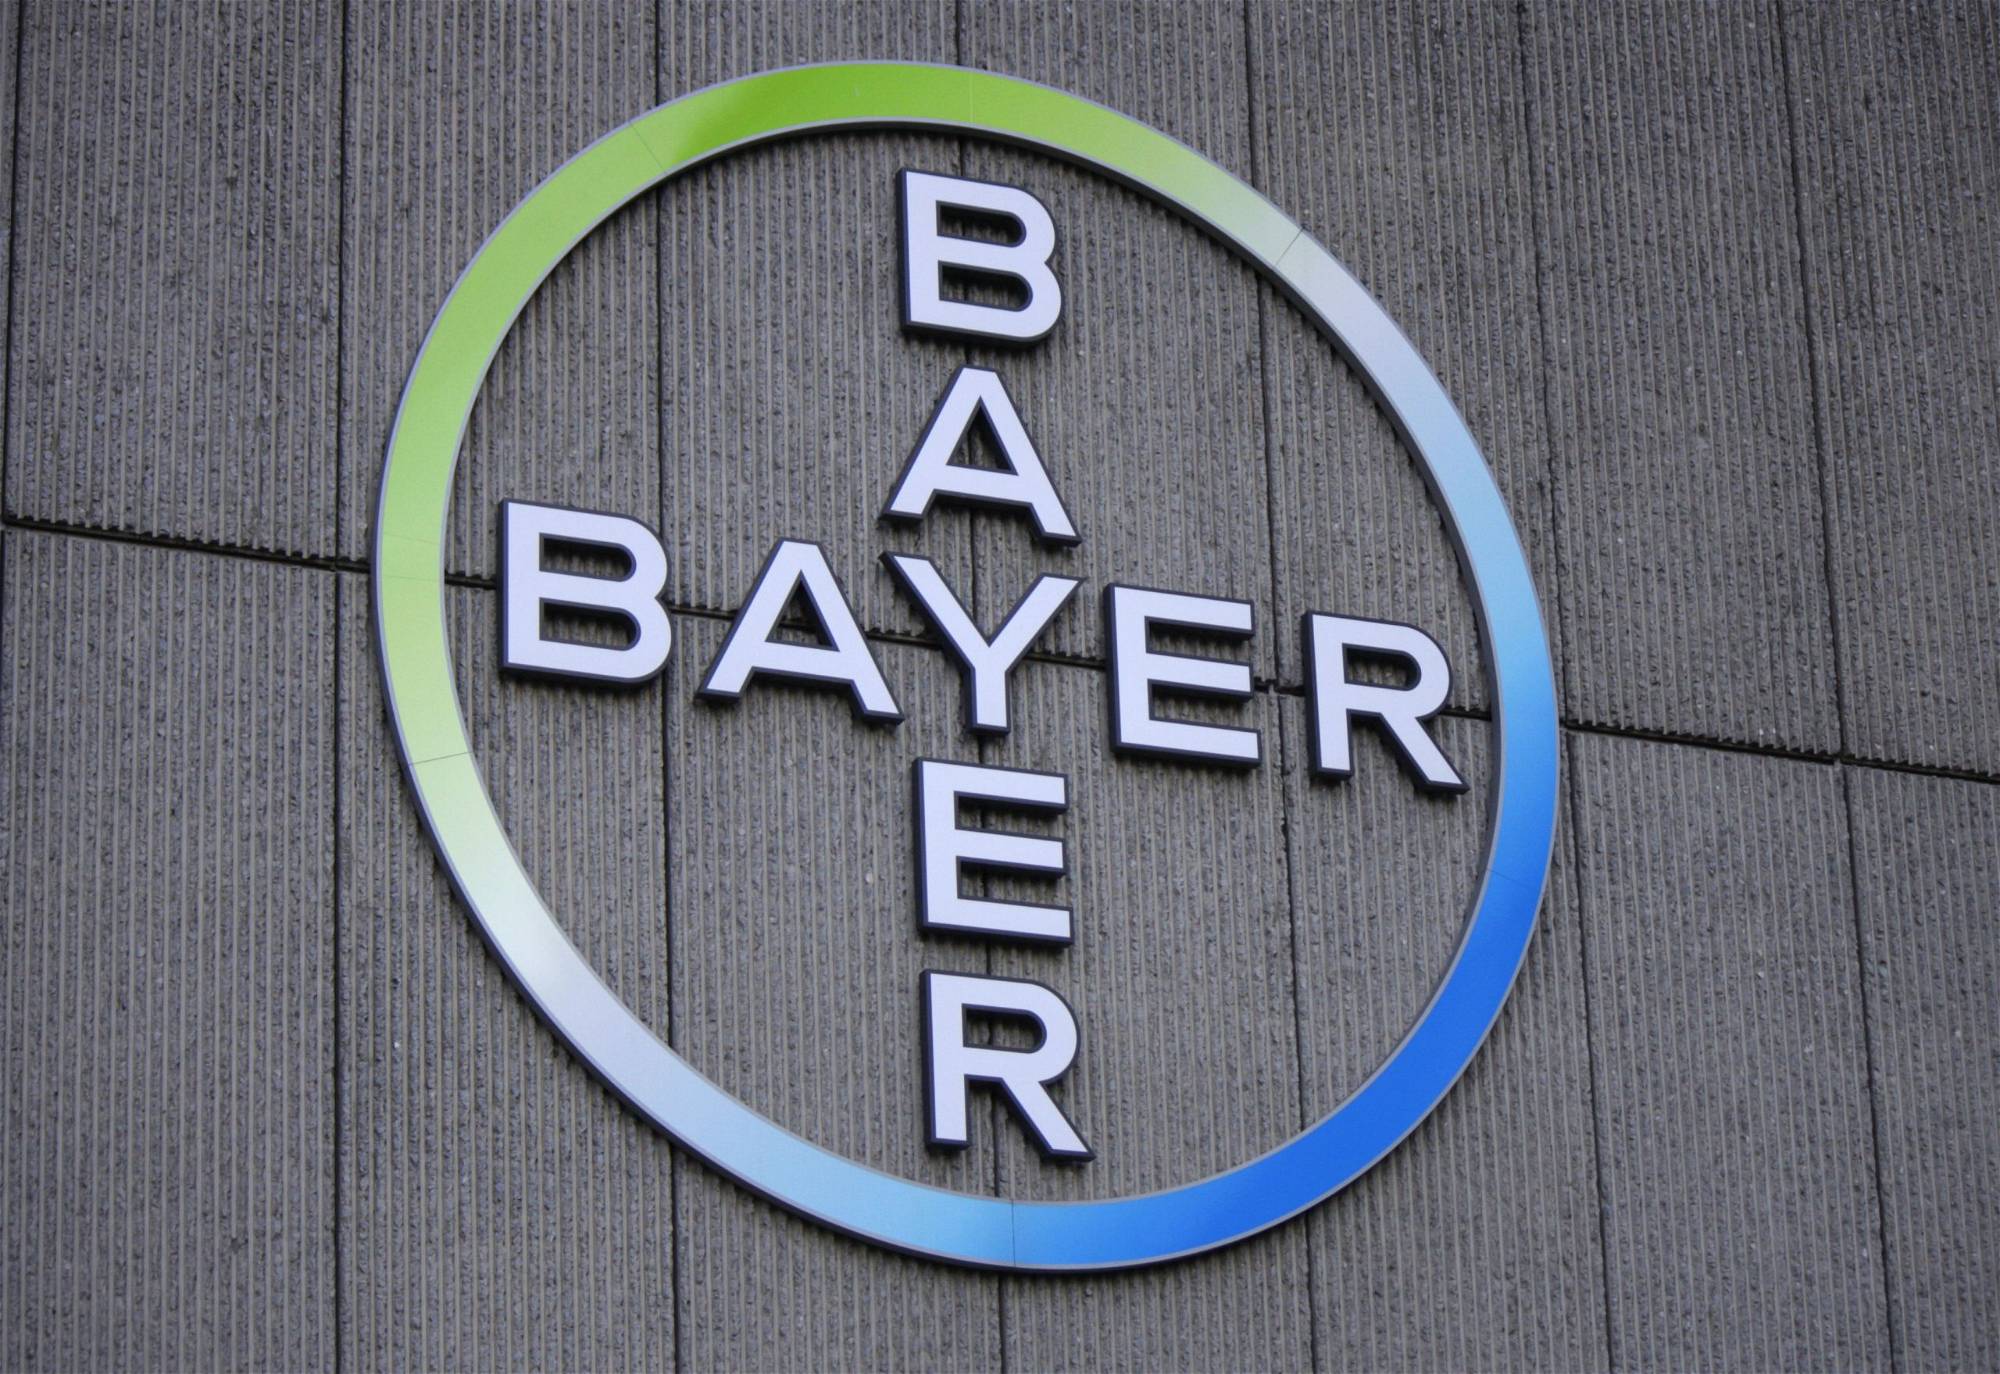 Bayer-Aktie: Sollten Sie jetzt kaufen?